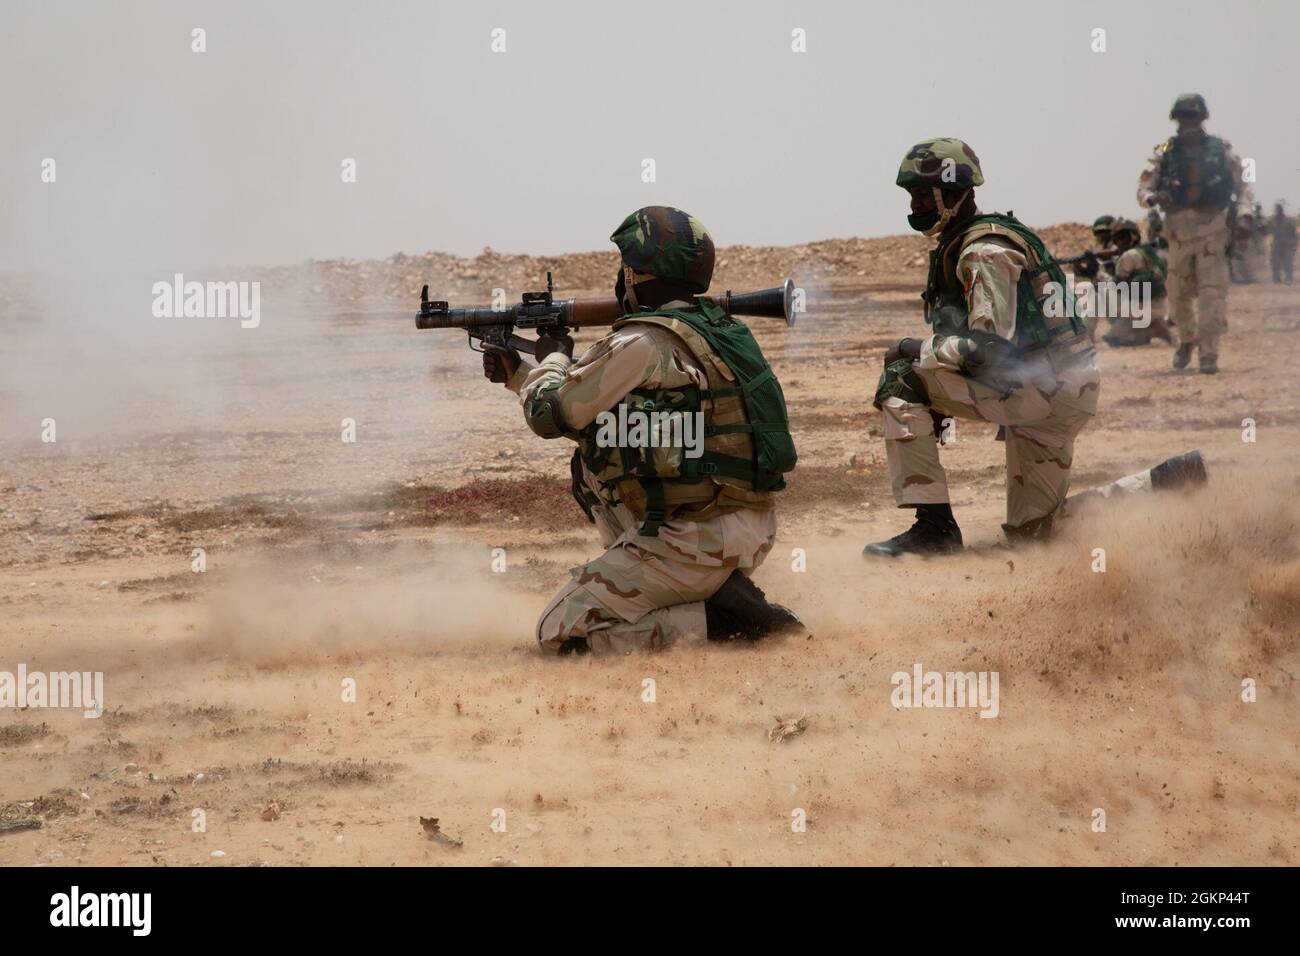 Un soldat des Forces armées sénégalaises lance un lanceur de grenade RPG-7 pendant l'exercice African Lion 21 à Tan Tan, Maroc, le 10 juin 2021. African Lion 2021 est l'exercice annuel le plus important, conjoint et premier du Commandement de l'Afrique des États-Unis, organisé par le Maroc, la Tunisie et le Sénégal, le 7-18 juin. Plus de 7,000 participants de neuf pays et de l'OTAN s'entraînent ensemble en mettant l'accent sur l'amélioration de la préparation des forces américaines et des forces des pays partenaires. African Lion 21 est un exercice multidomaine, multicomposant et multinational, qui utilise une gamme complète de capacités de mission dans le but de renforcer l'interopérabilité entre les p Banque D'Images